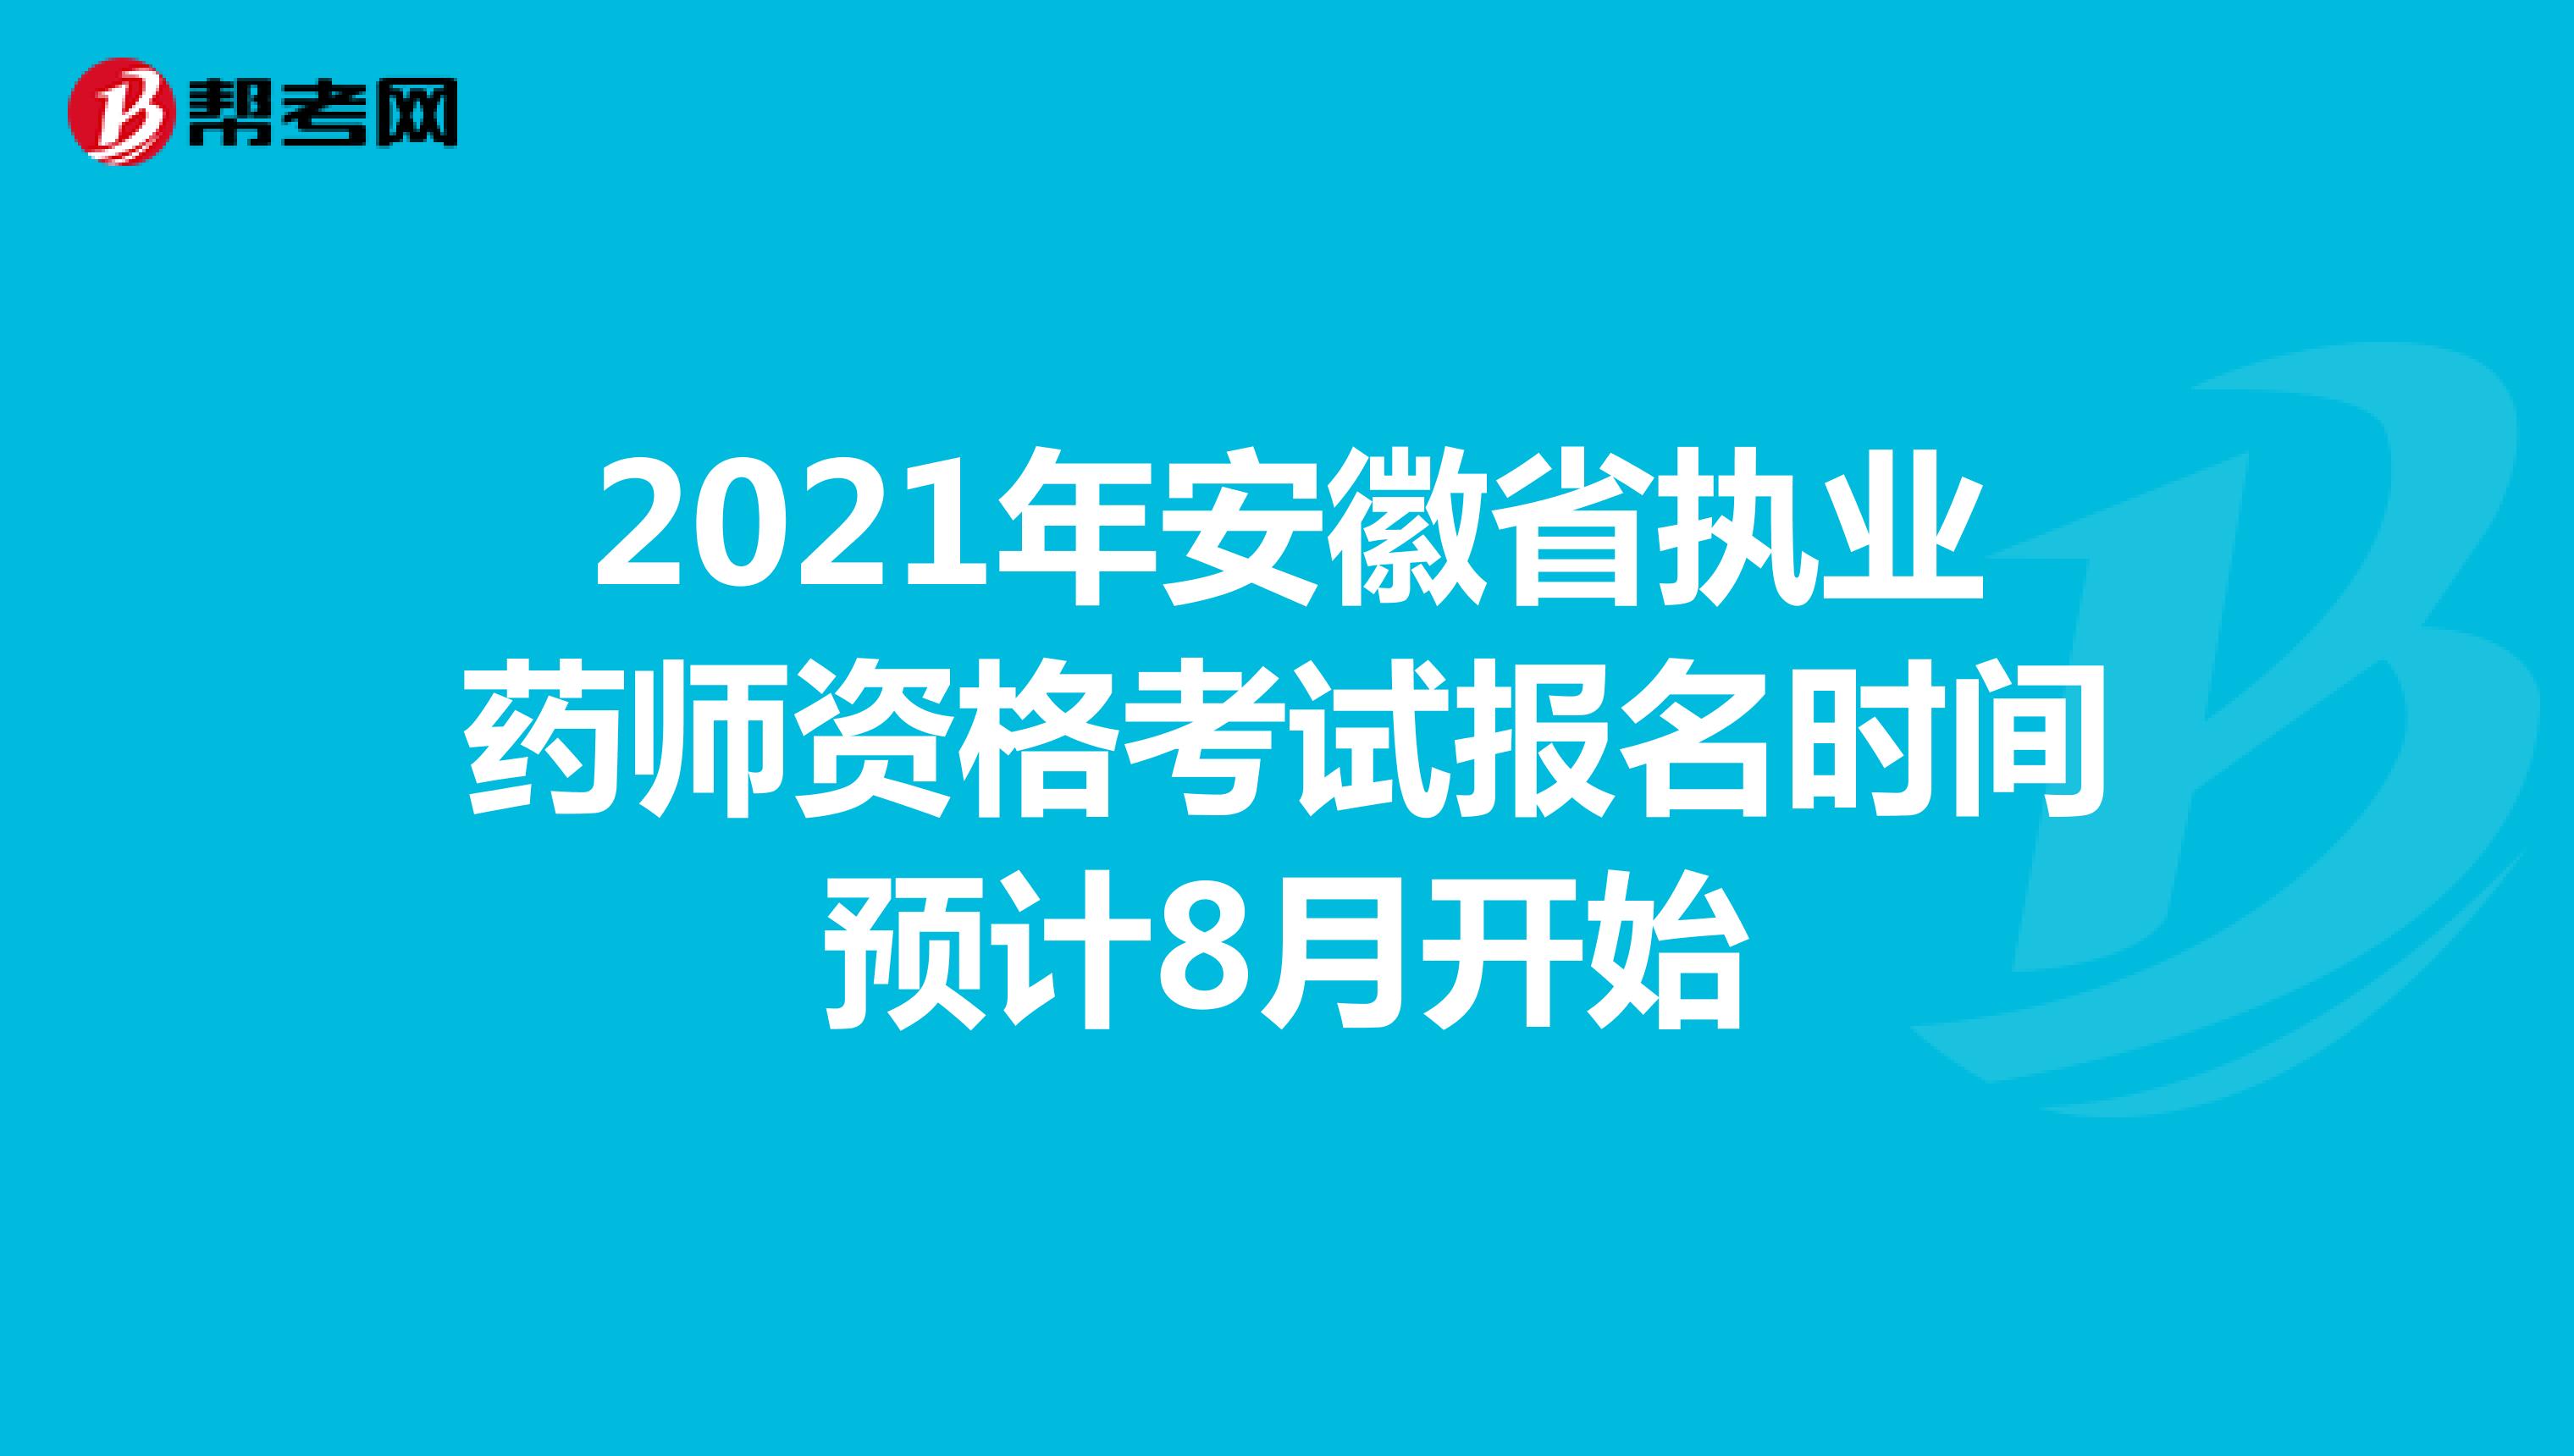 2021年安徽省执业药师资格考试报名时间预计8月开始